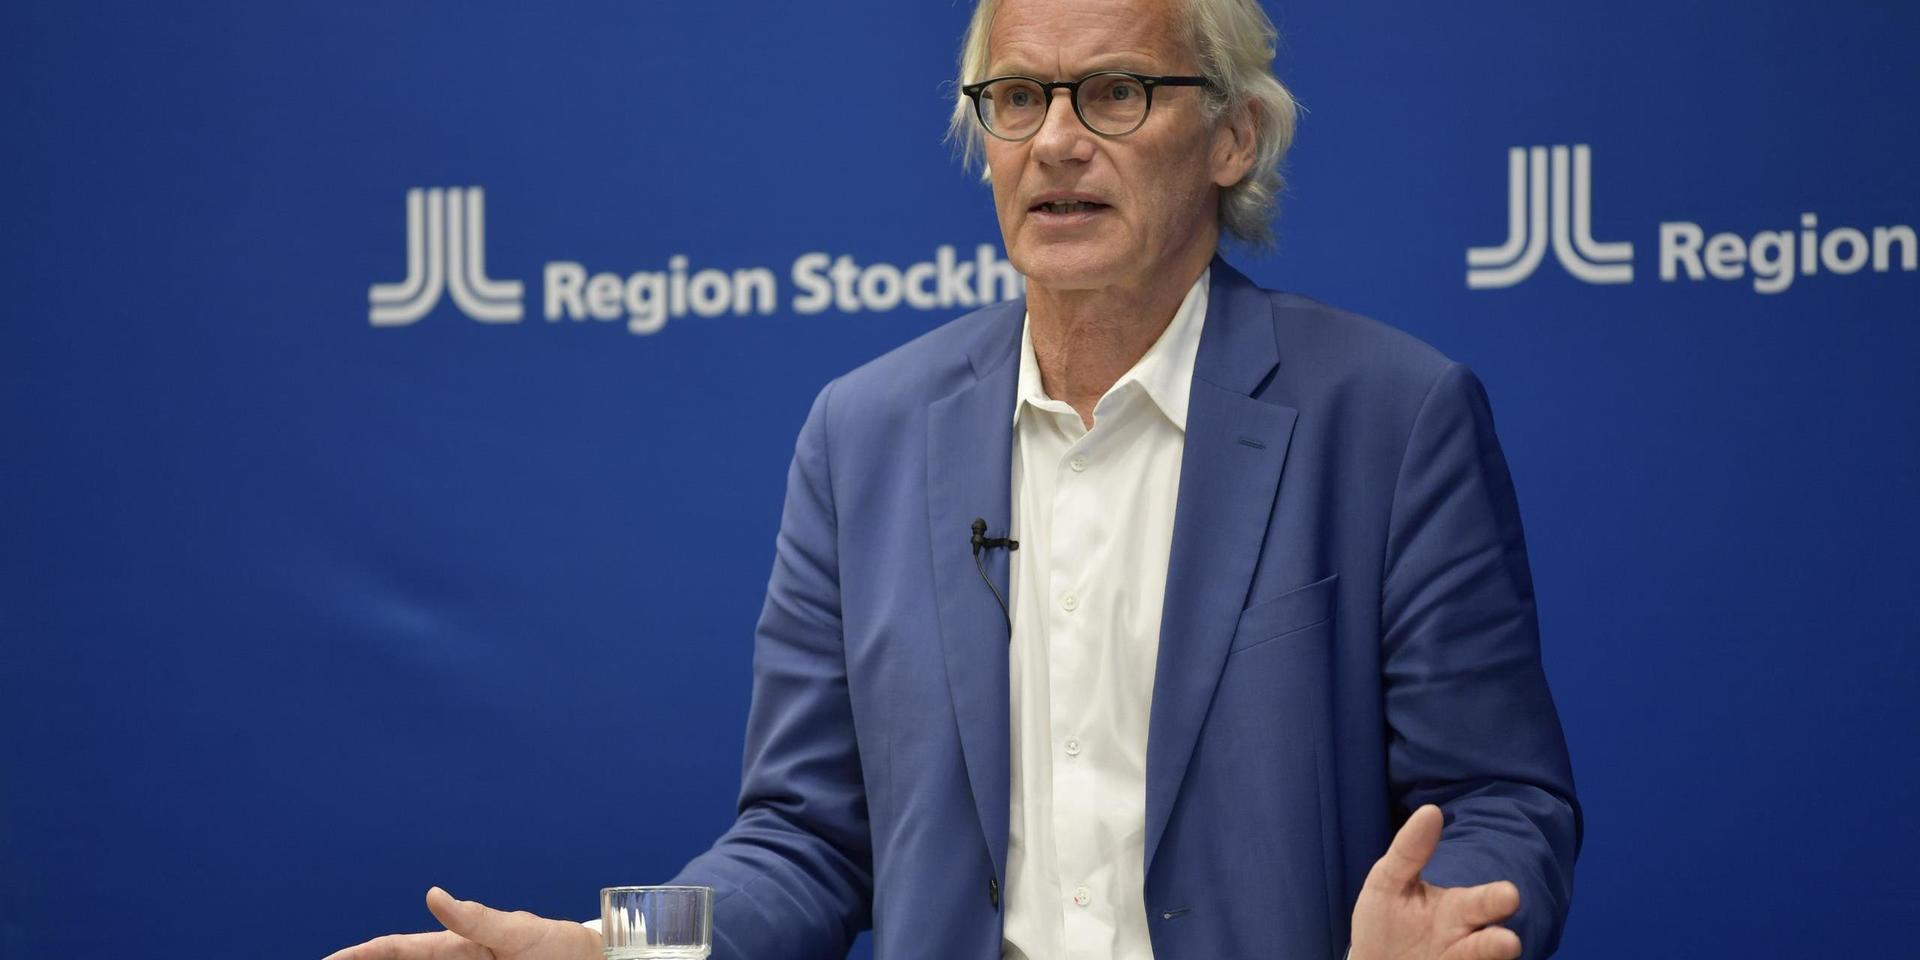 Tillförordnad hälso- och sjukvårdsdirektör Johan Bratt berättar att Region Stockholm återgår till normalt ledningsläge.